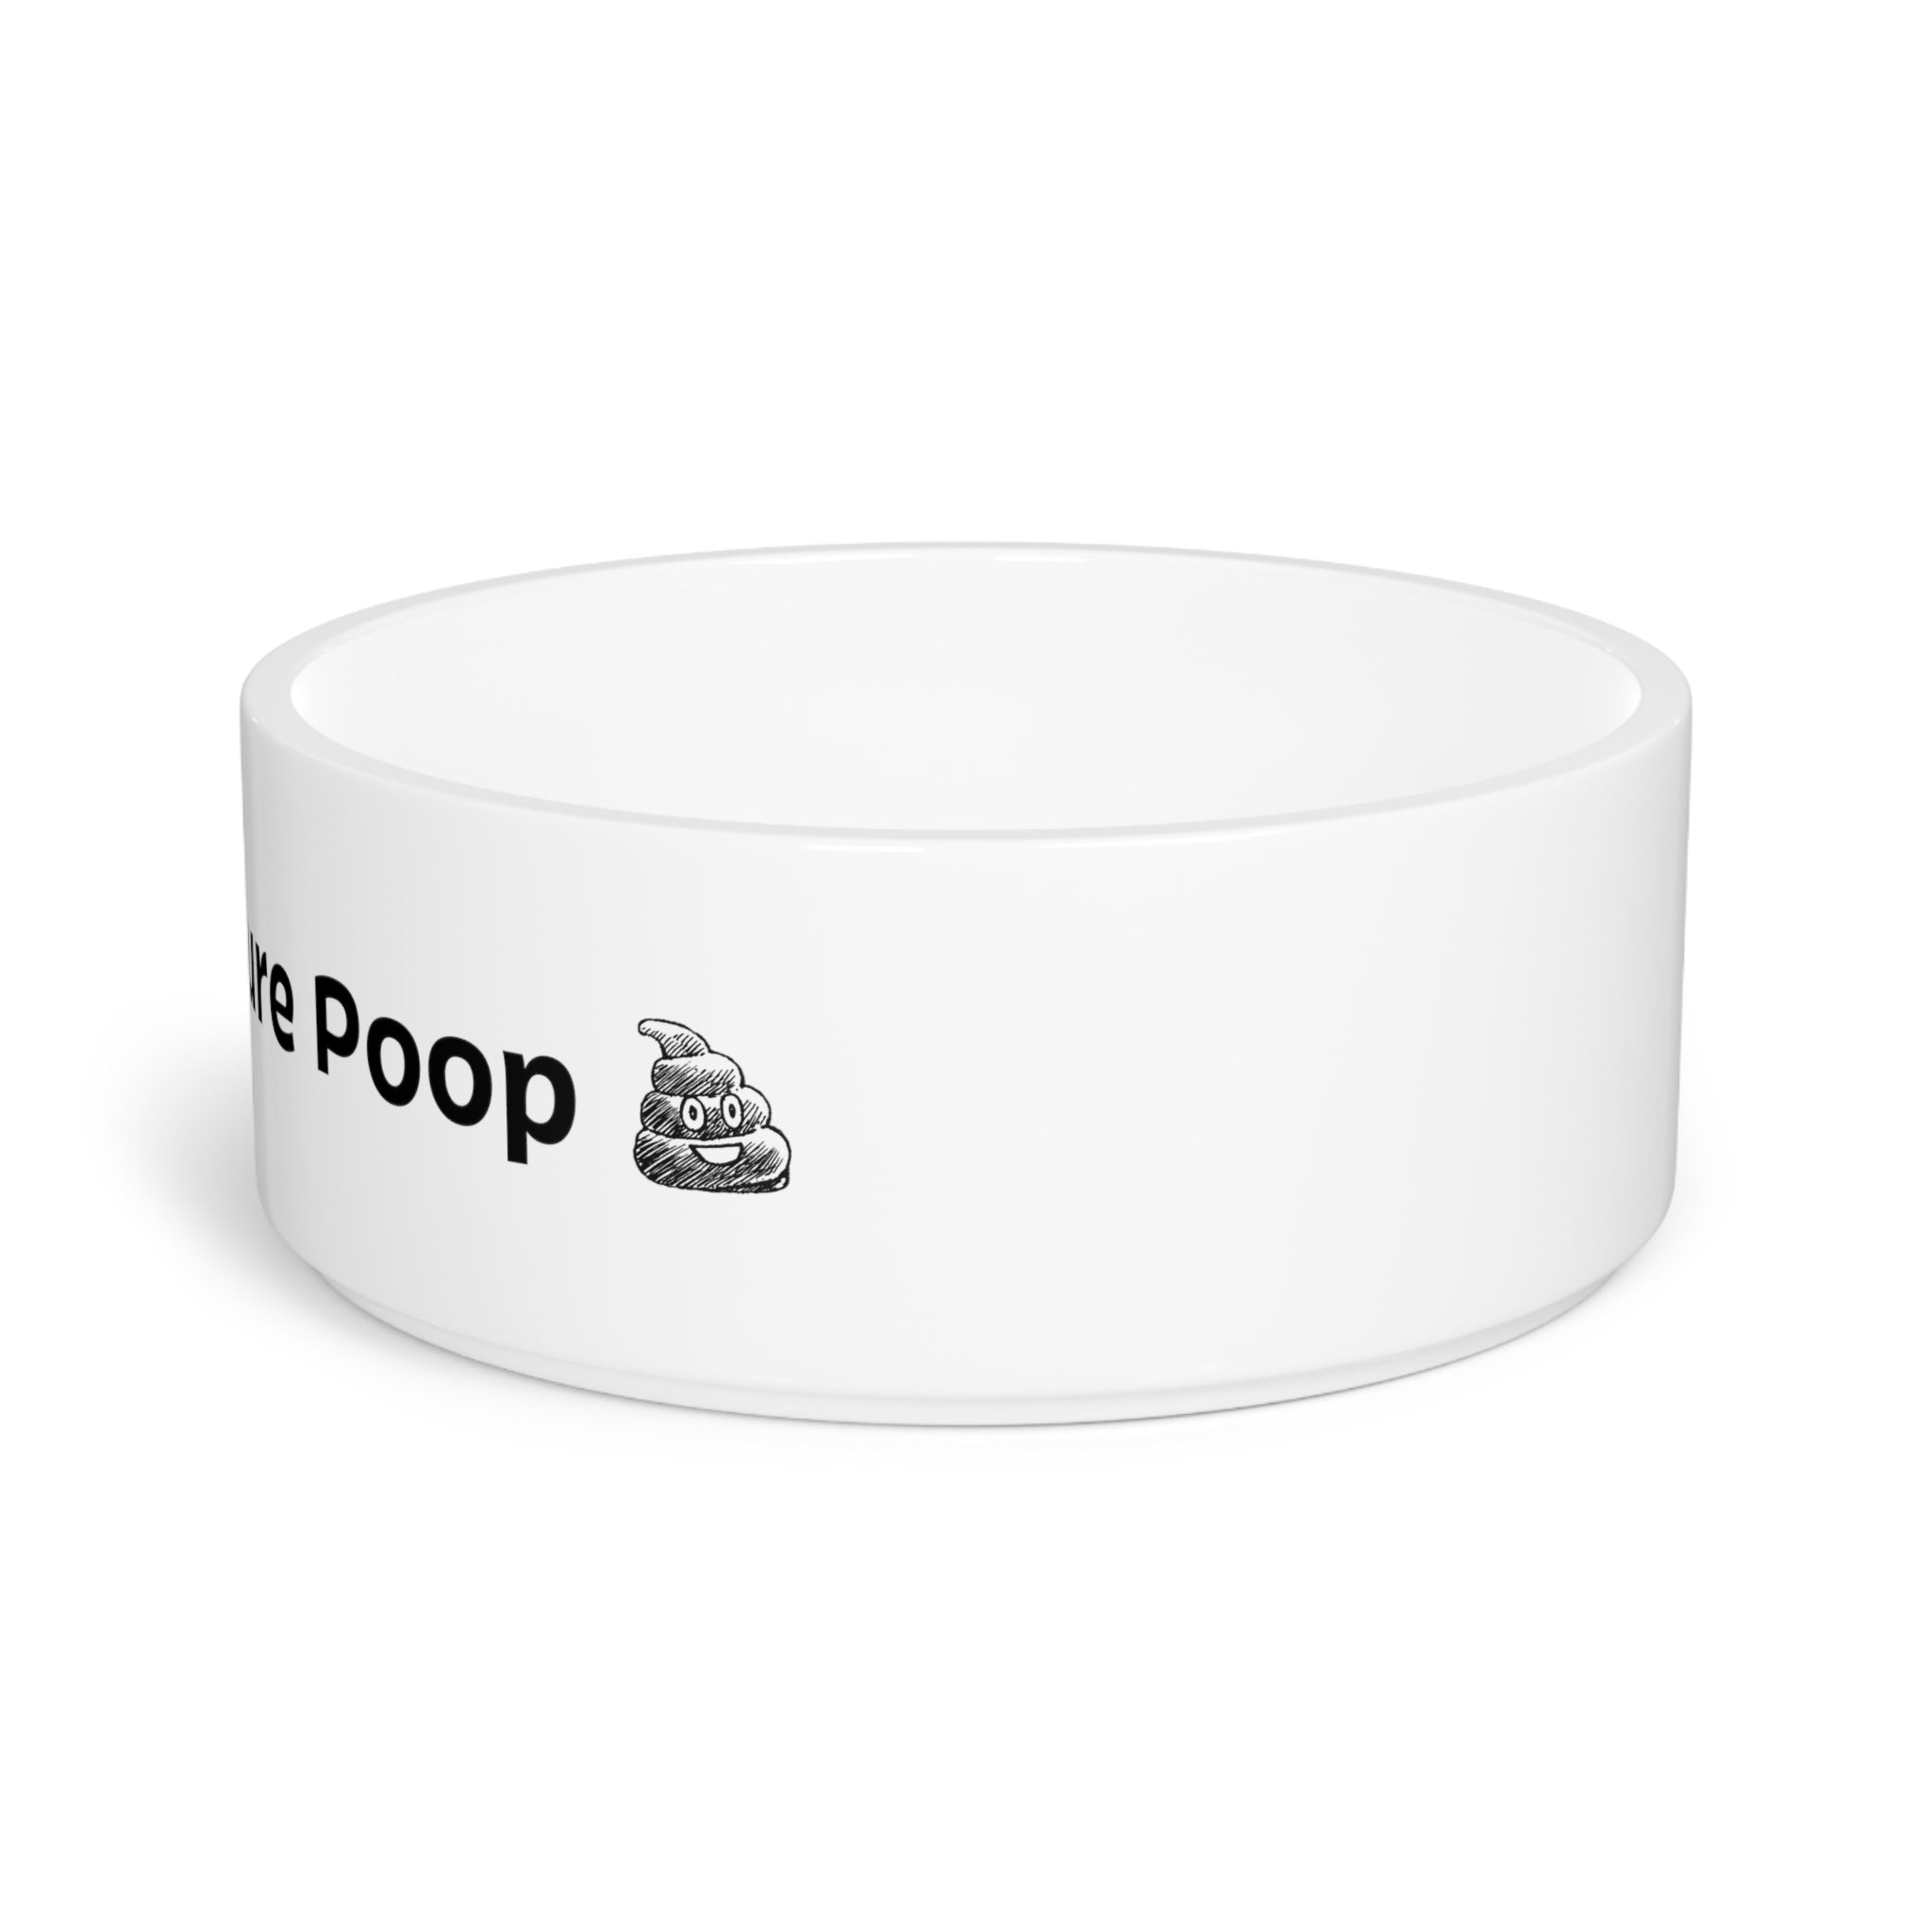 Future Poop Bowl